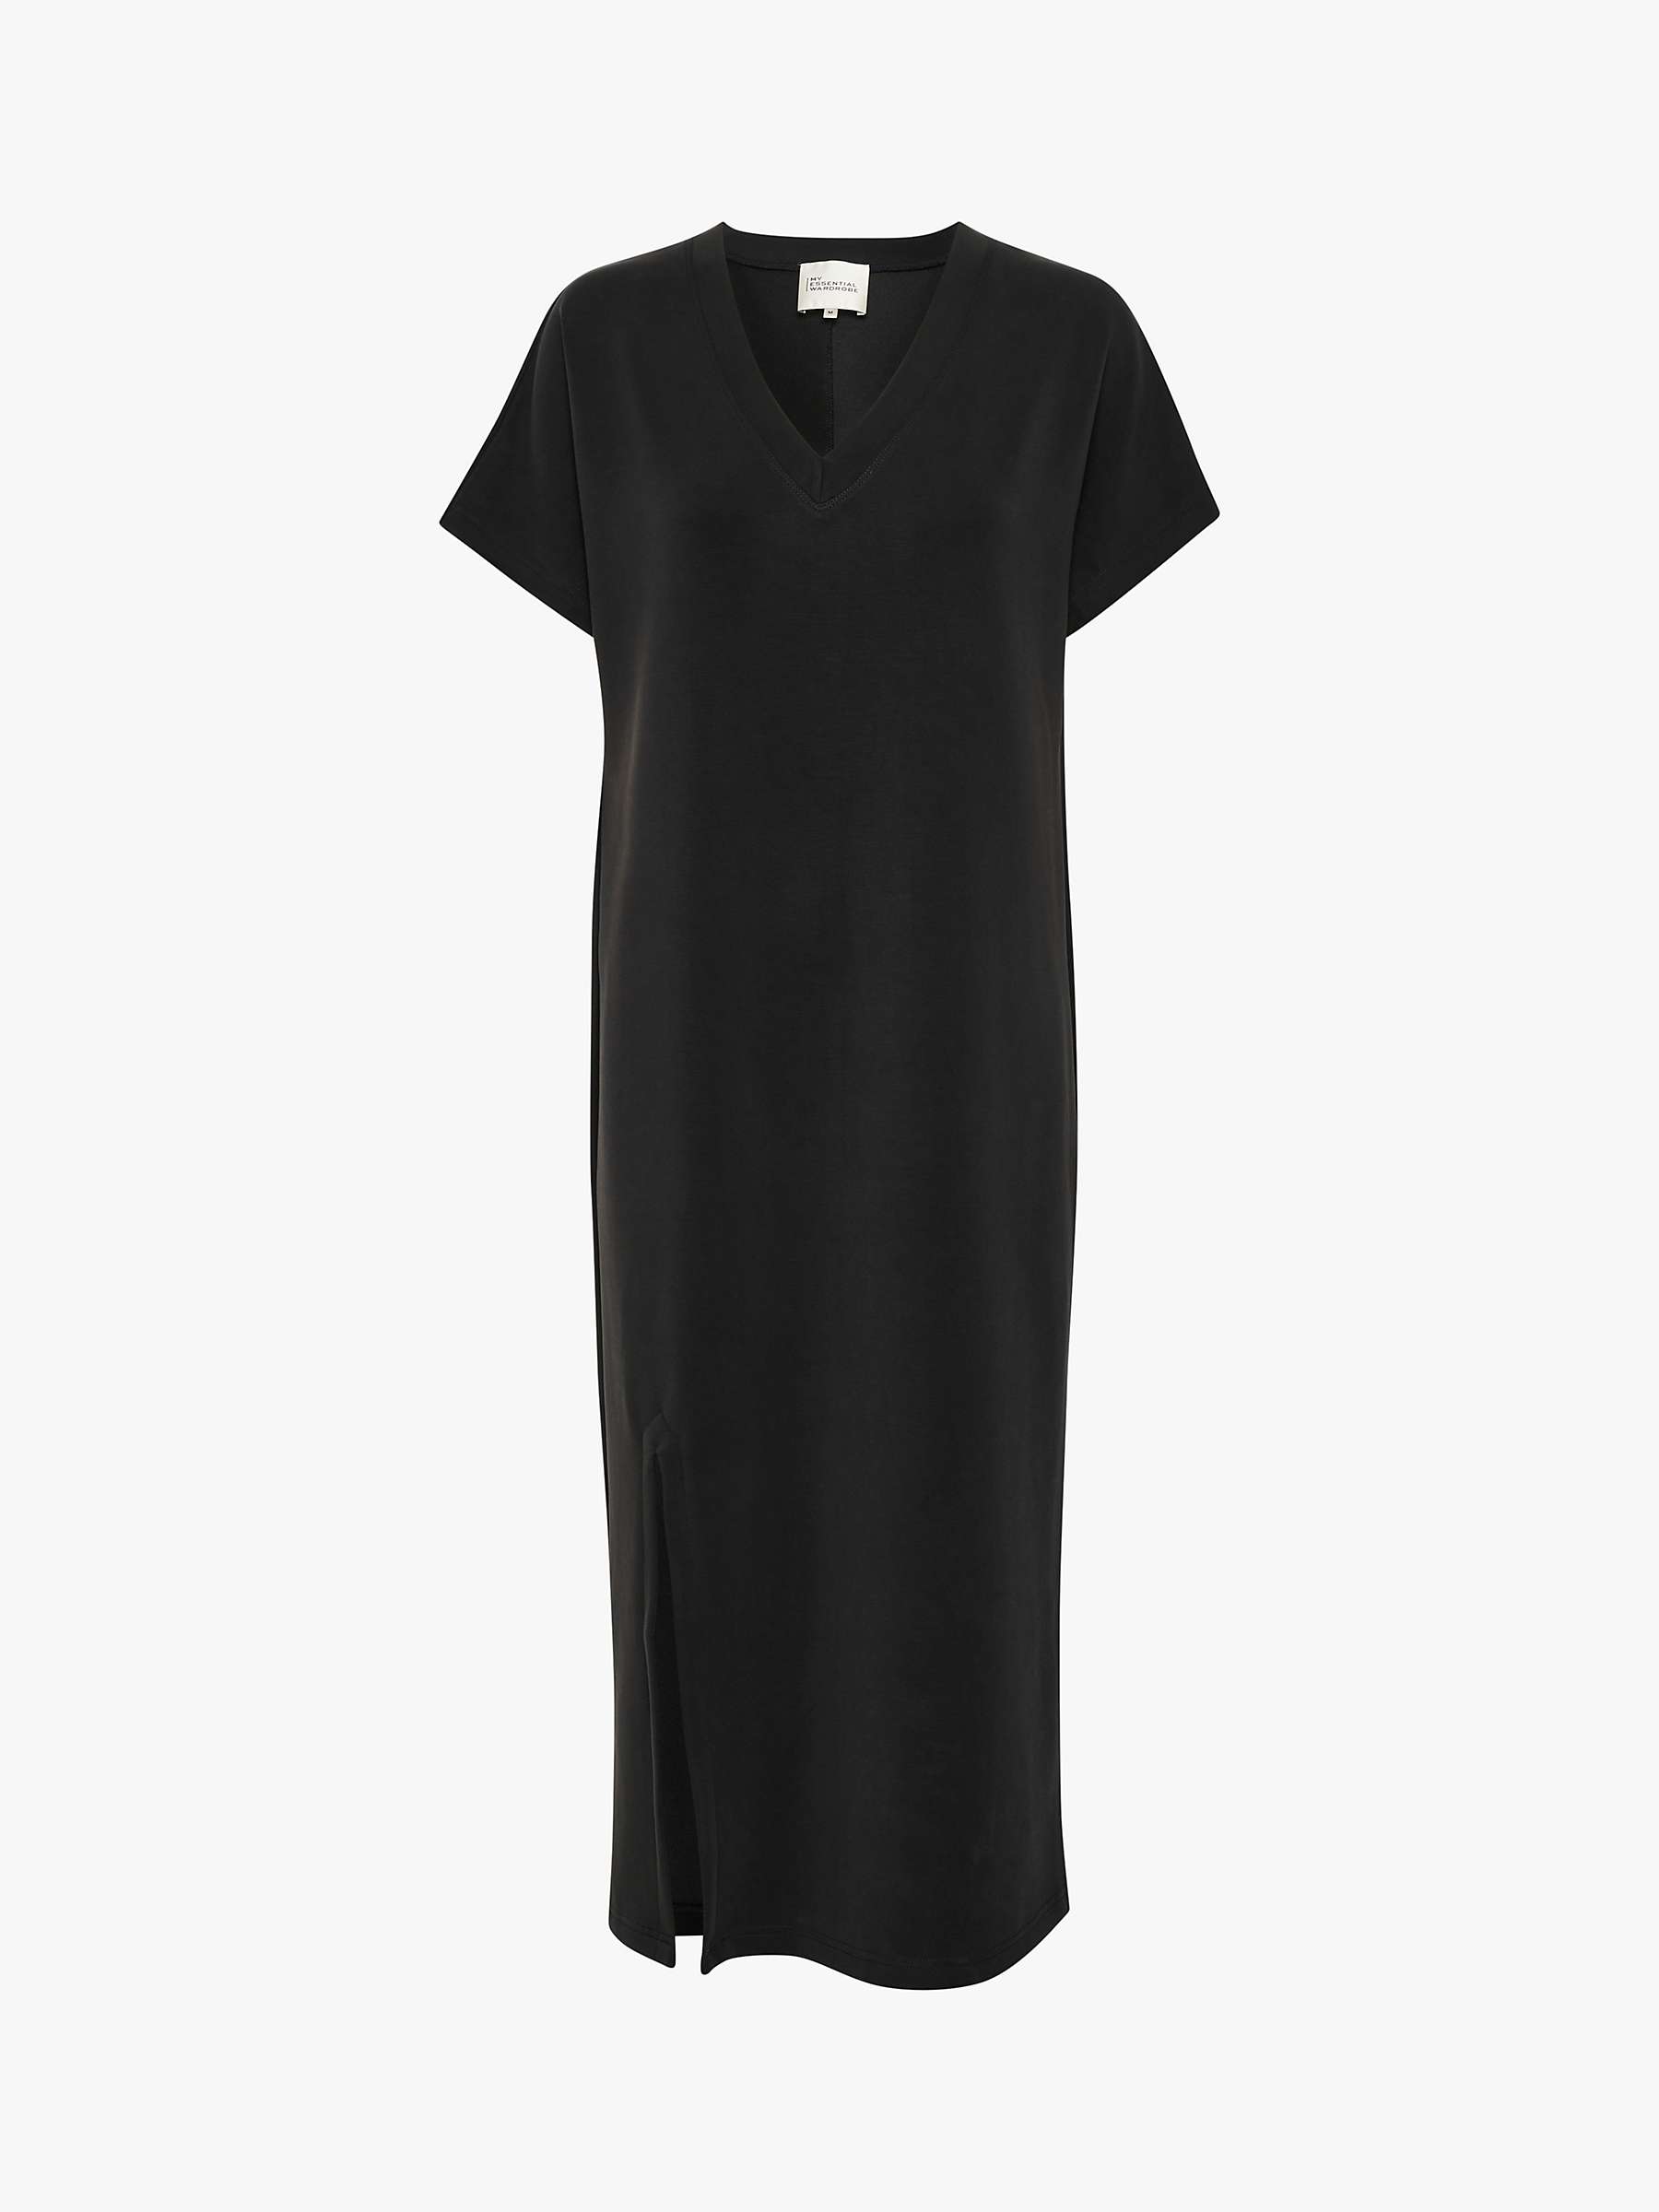 Buy MY ESSENTIAL WARDROBE Elle Short Sleeve V-Neck Maxi Dress, Black Online at johnlewis.com